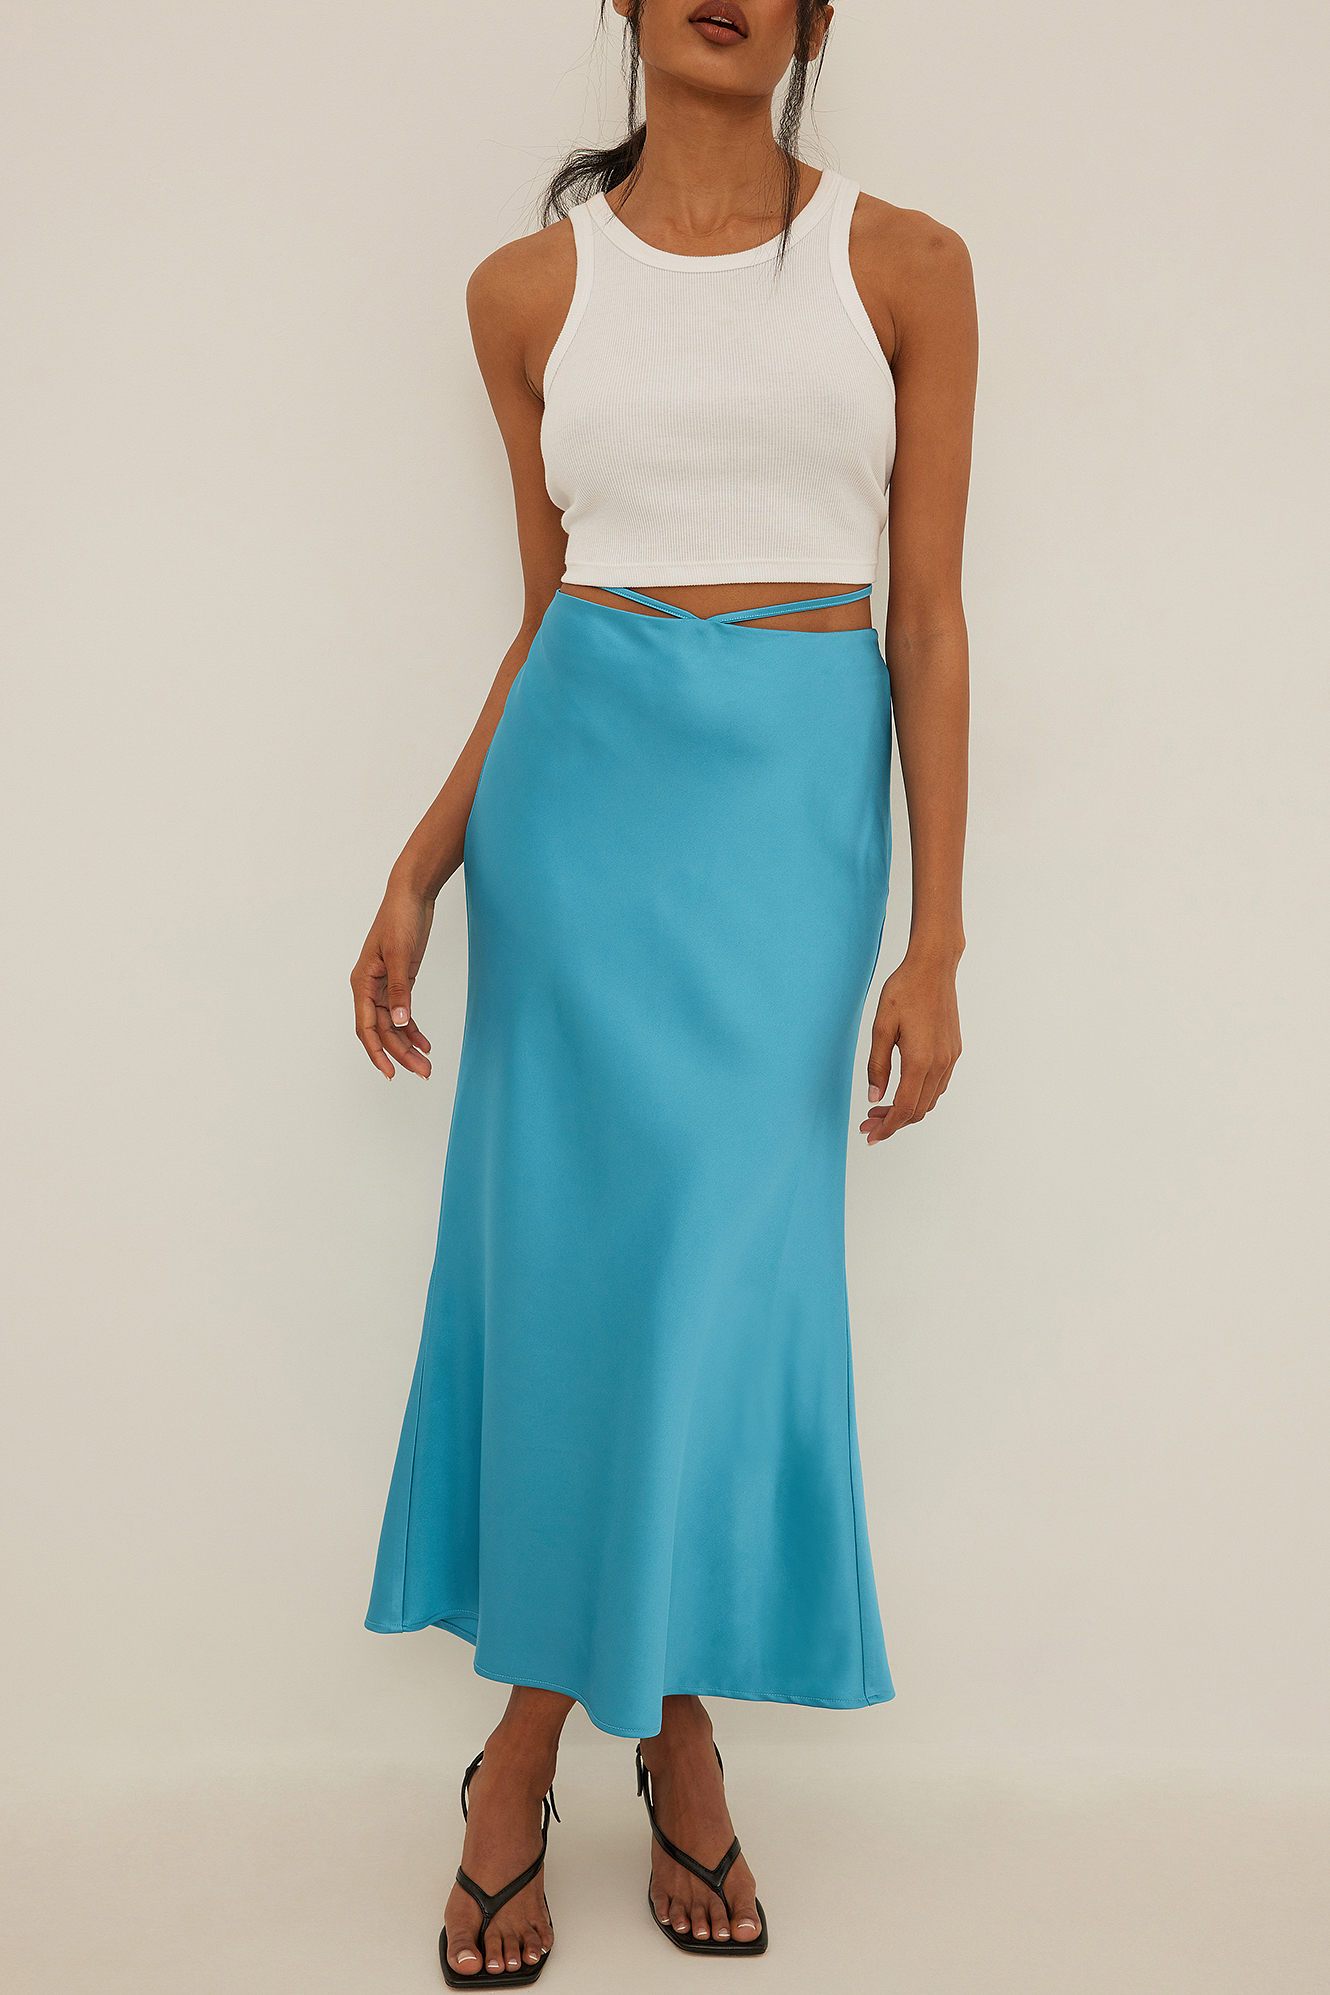 KRISP® Womens Long Maxi Skirt Simple Bodycon Summer Skirts Lightweight